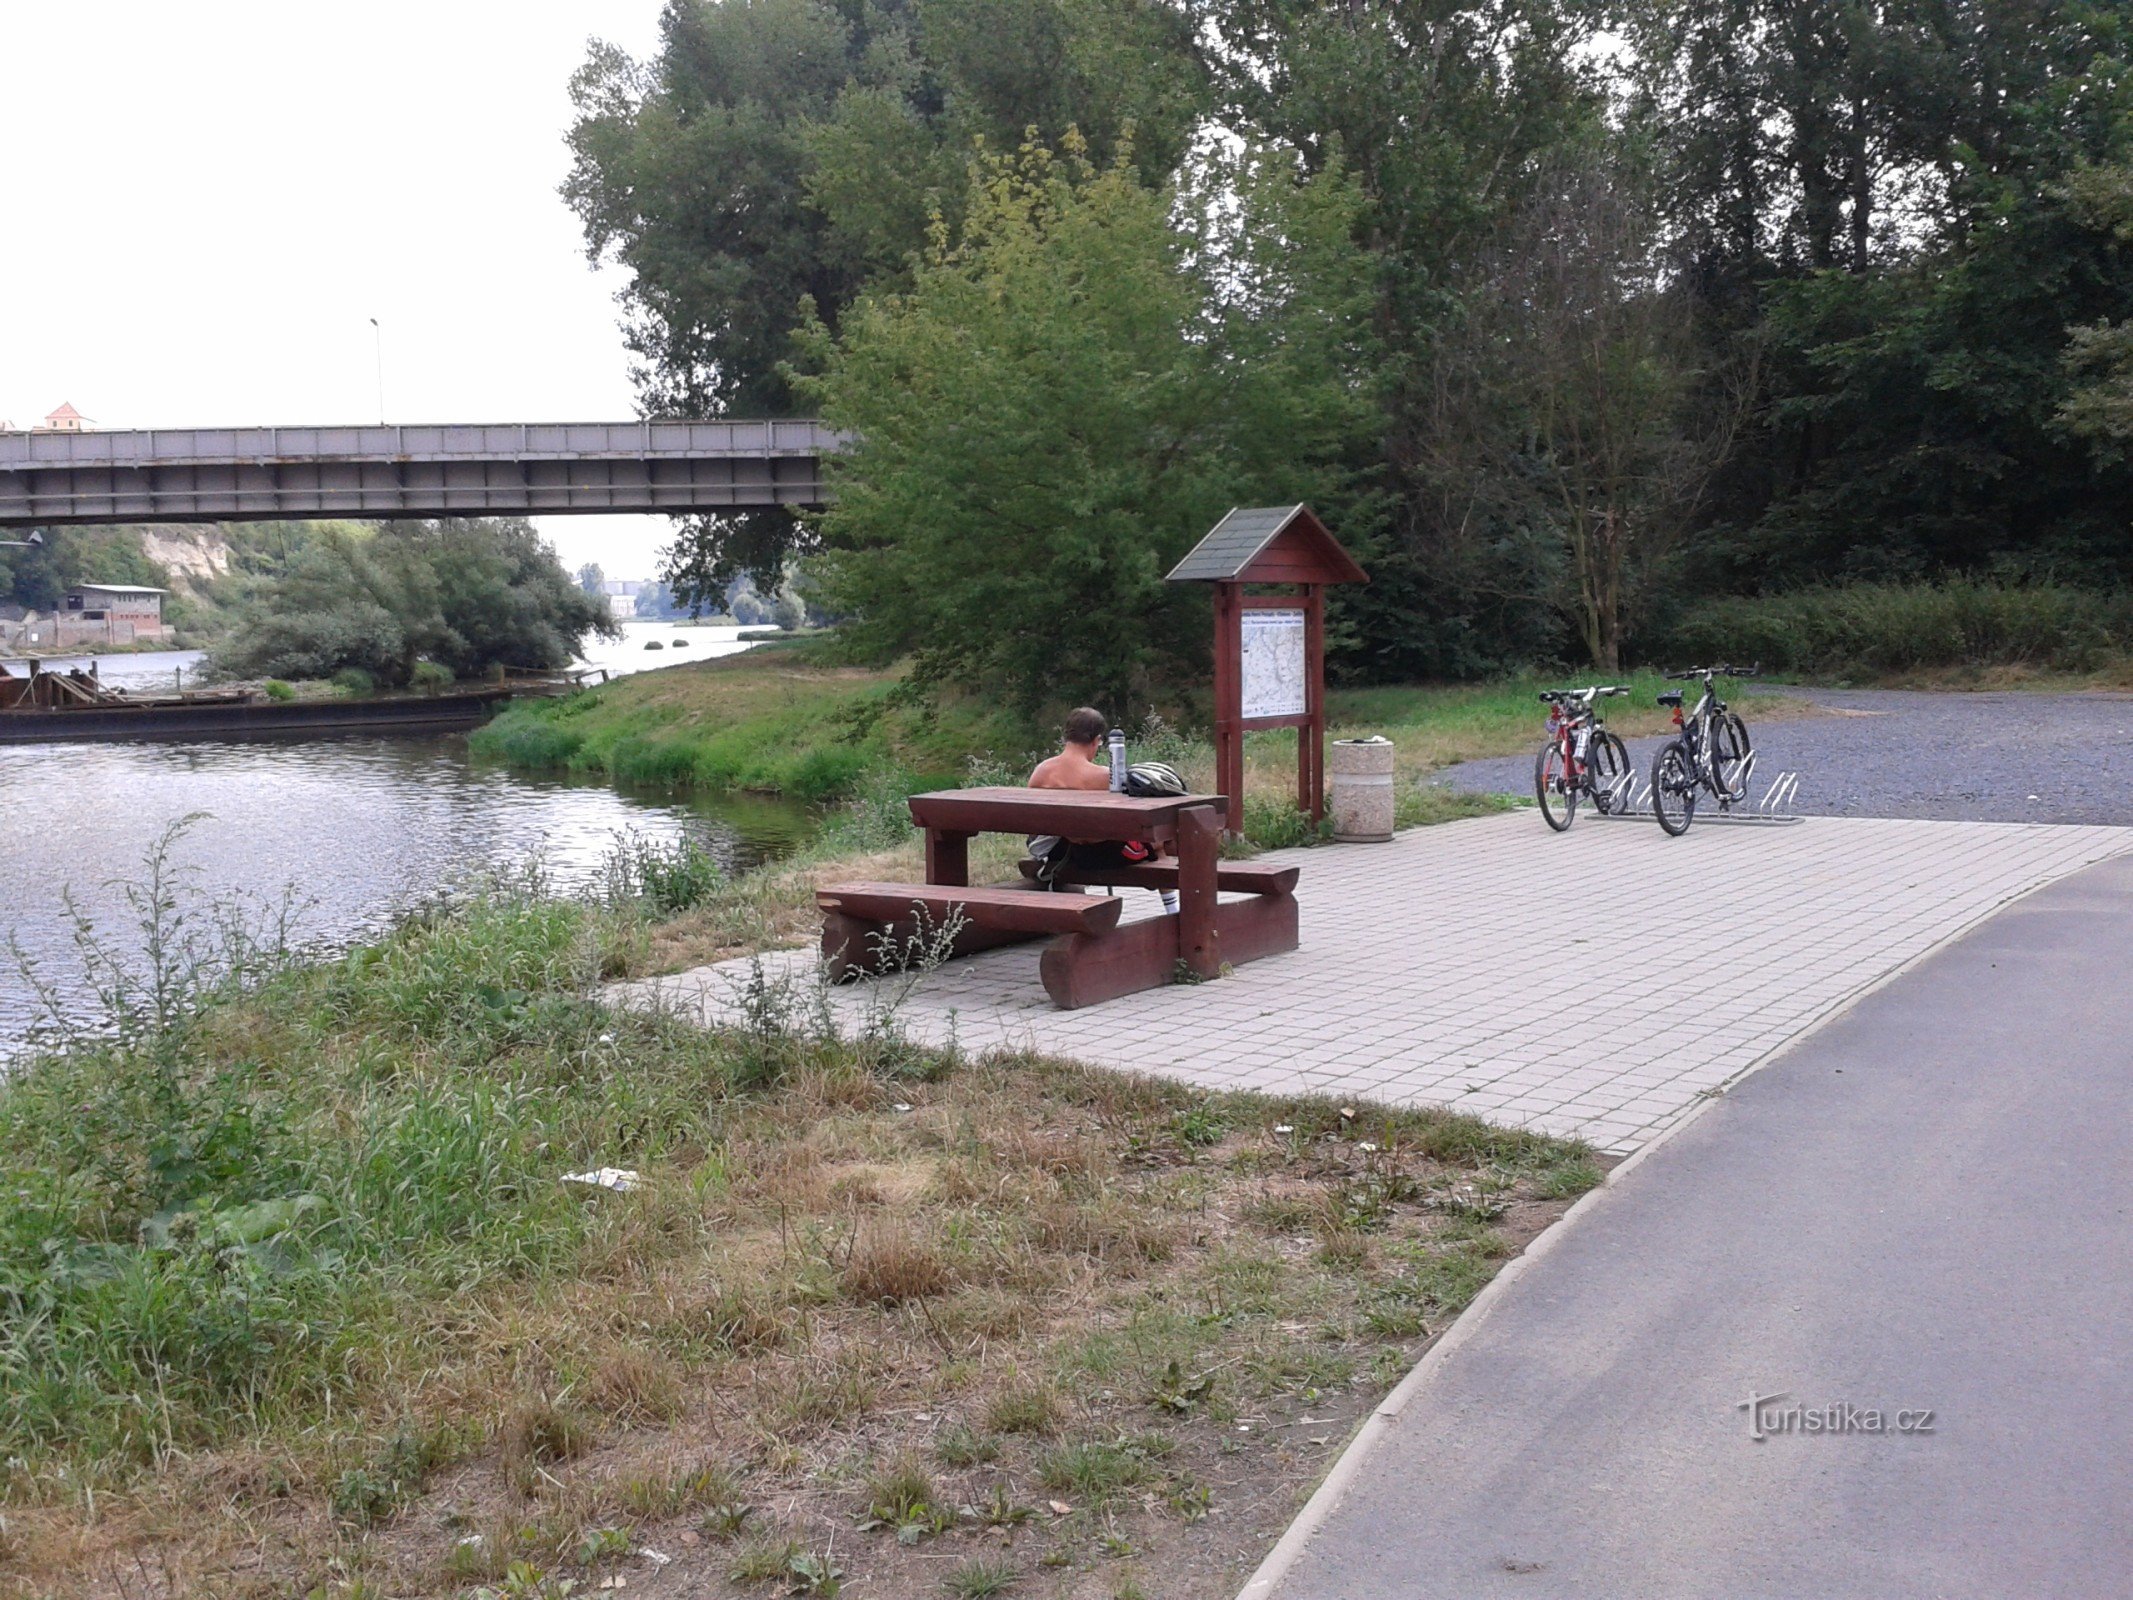 Đạp xe dọc sông Elbe từ Mělník đến Stará Boleslav